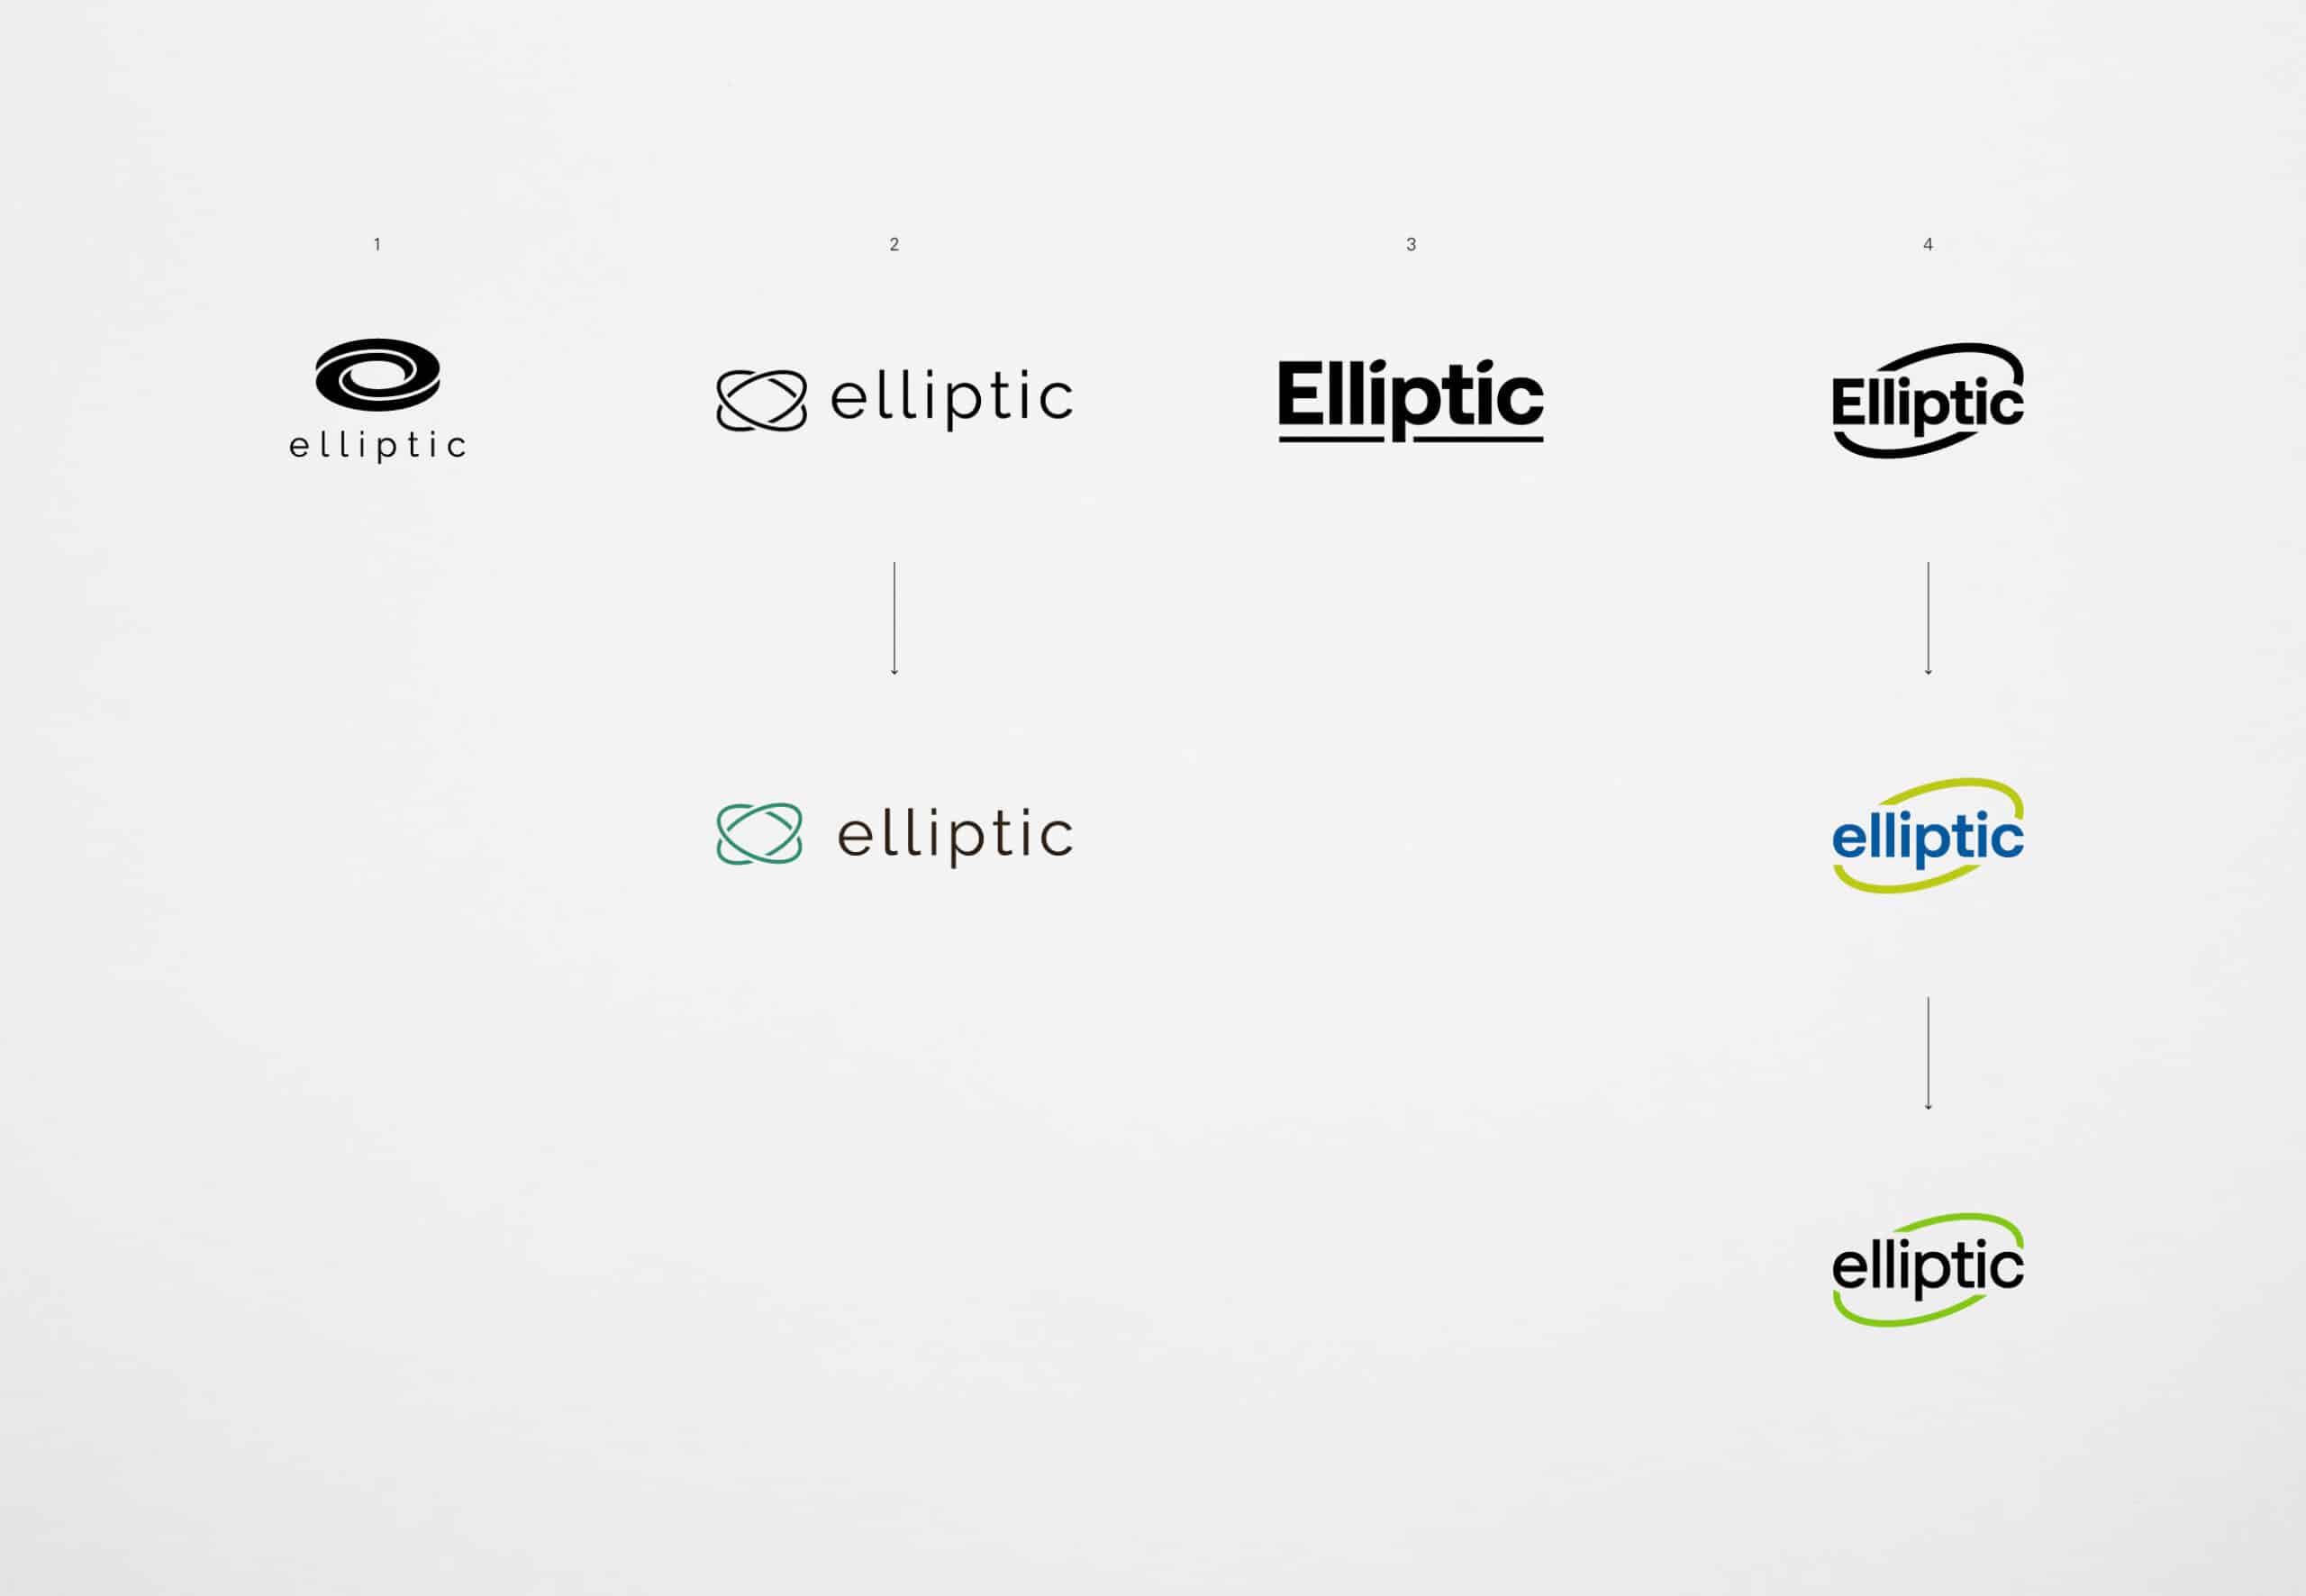 Premières étapes de propositions de logos pour la société informatique Elliptic.